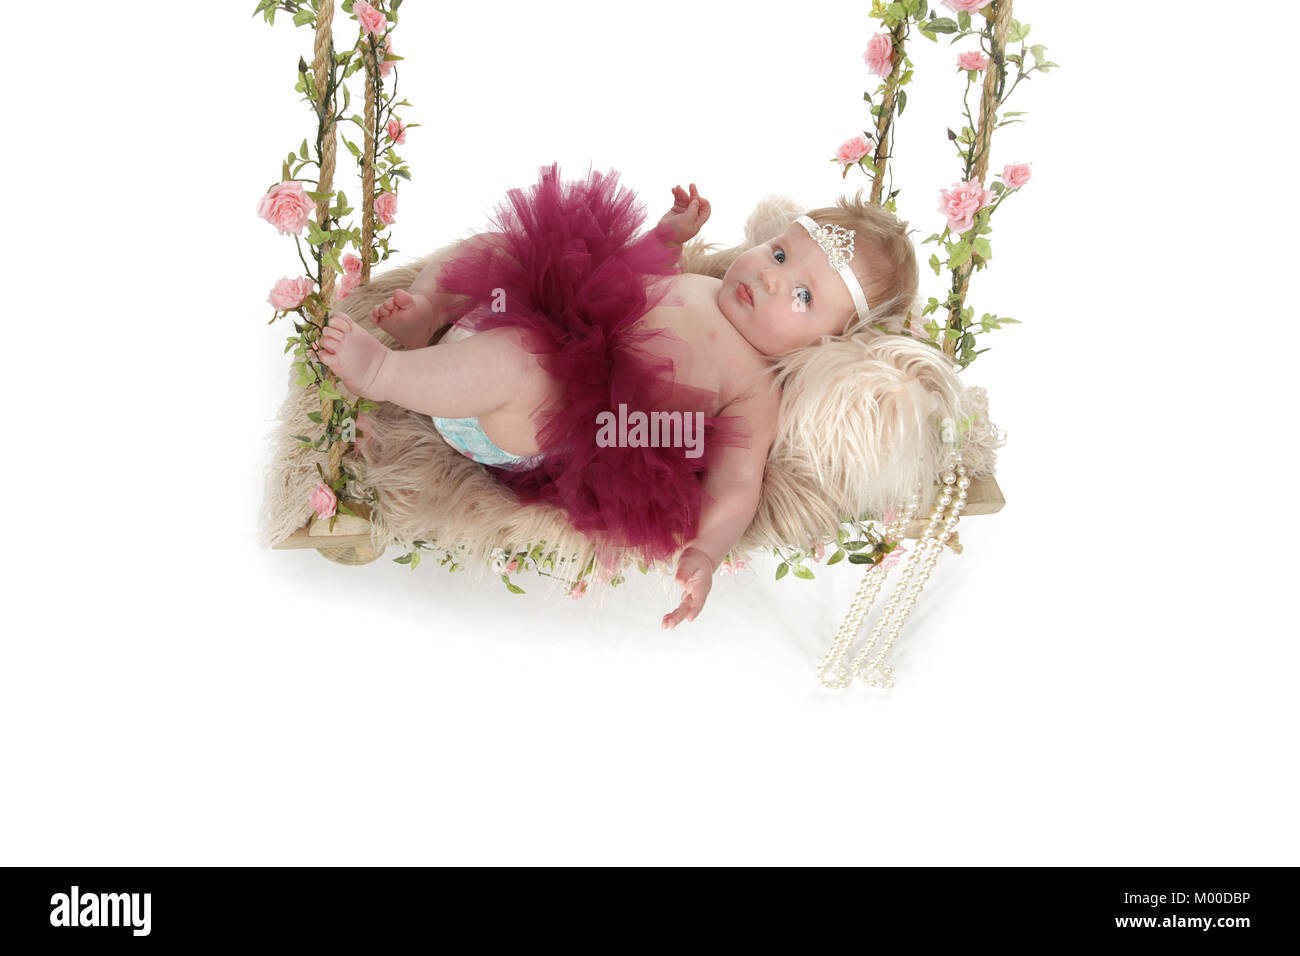 6 mese fa bella bambina su uno swing Foto Stock